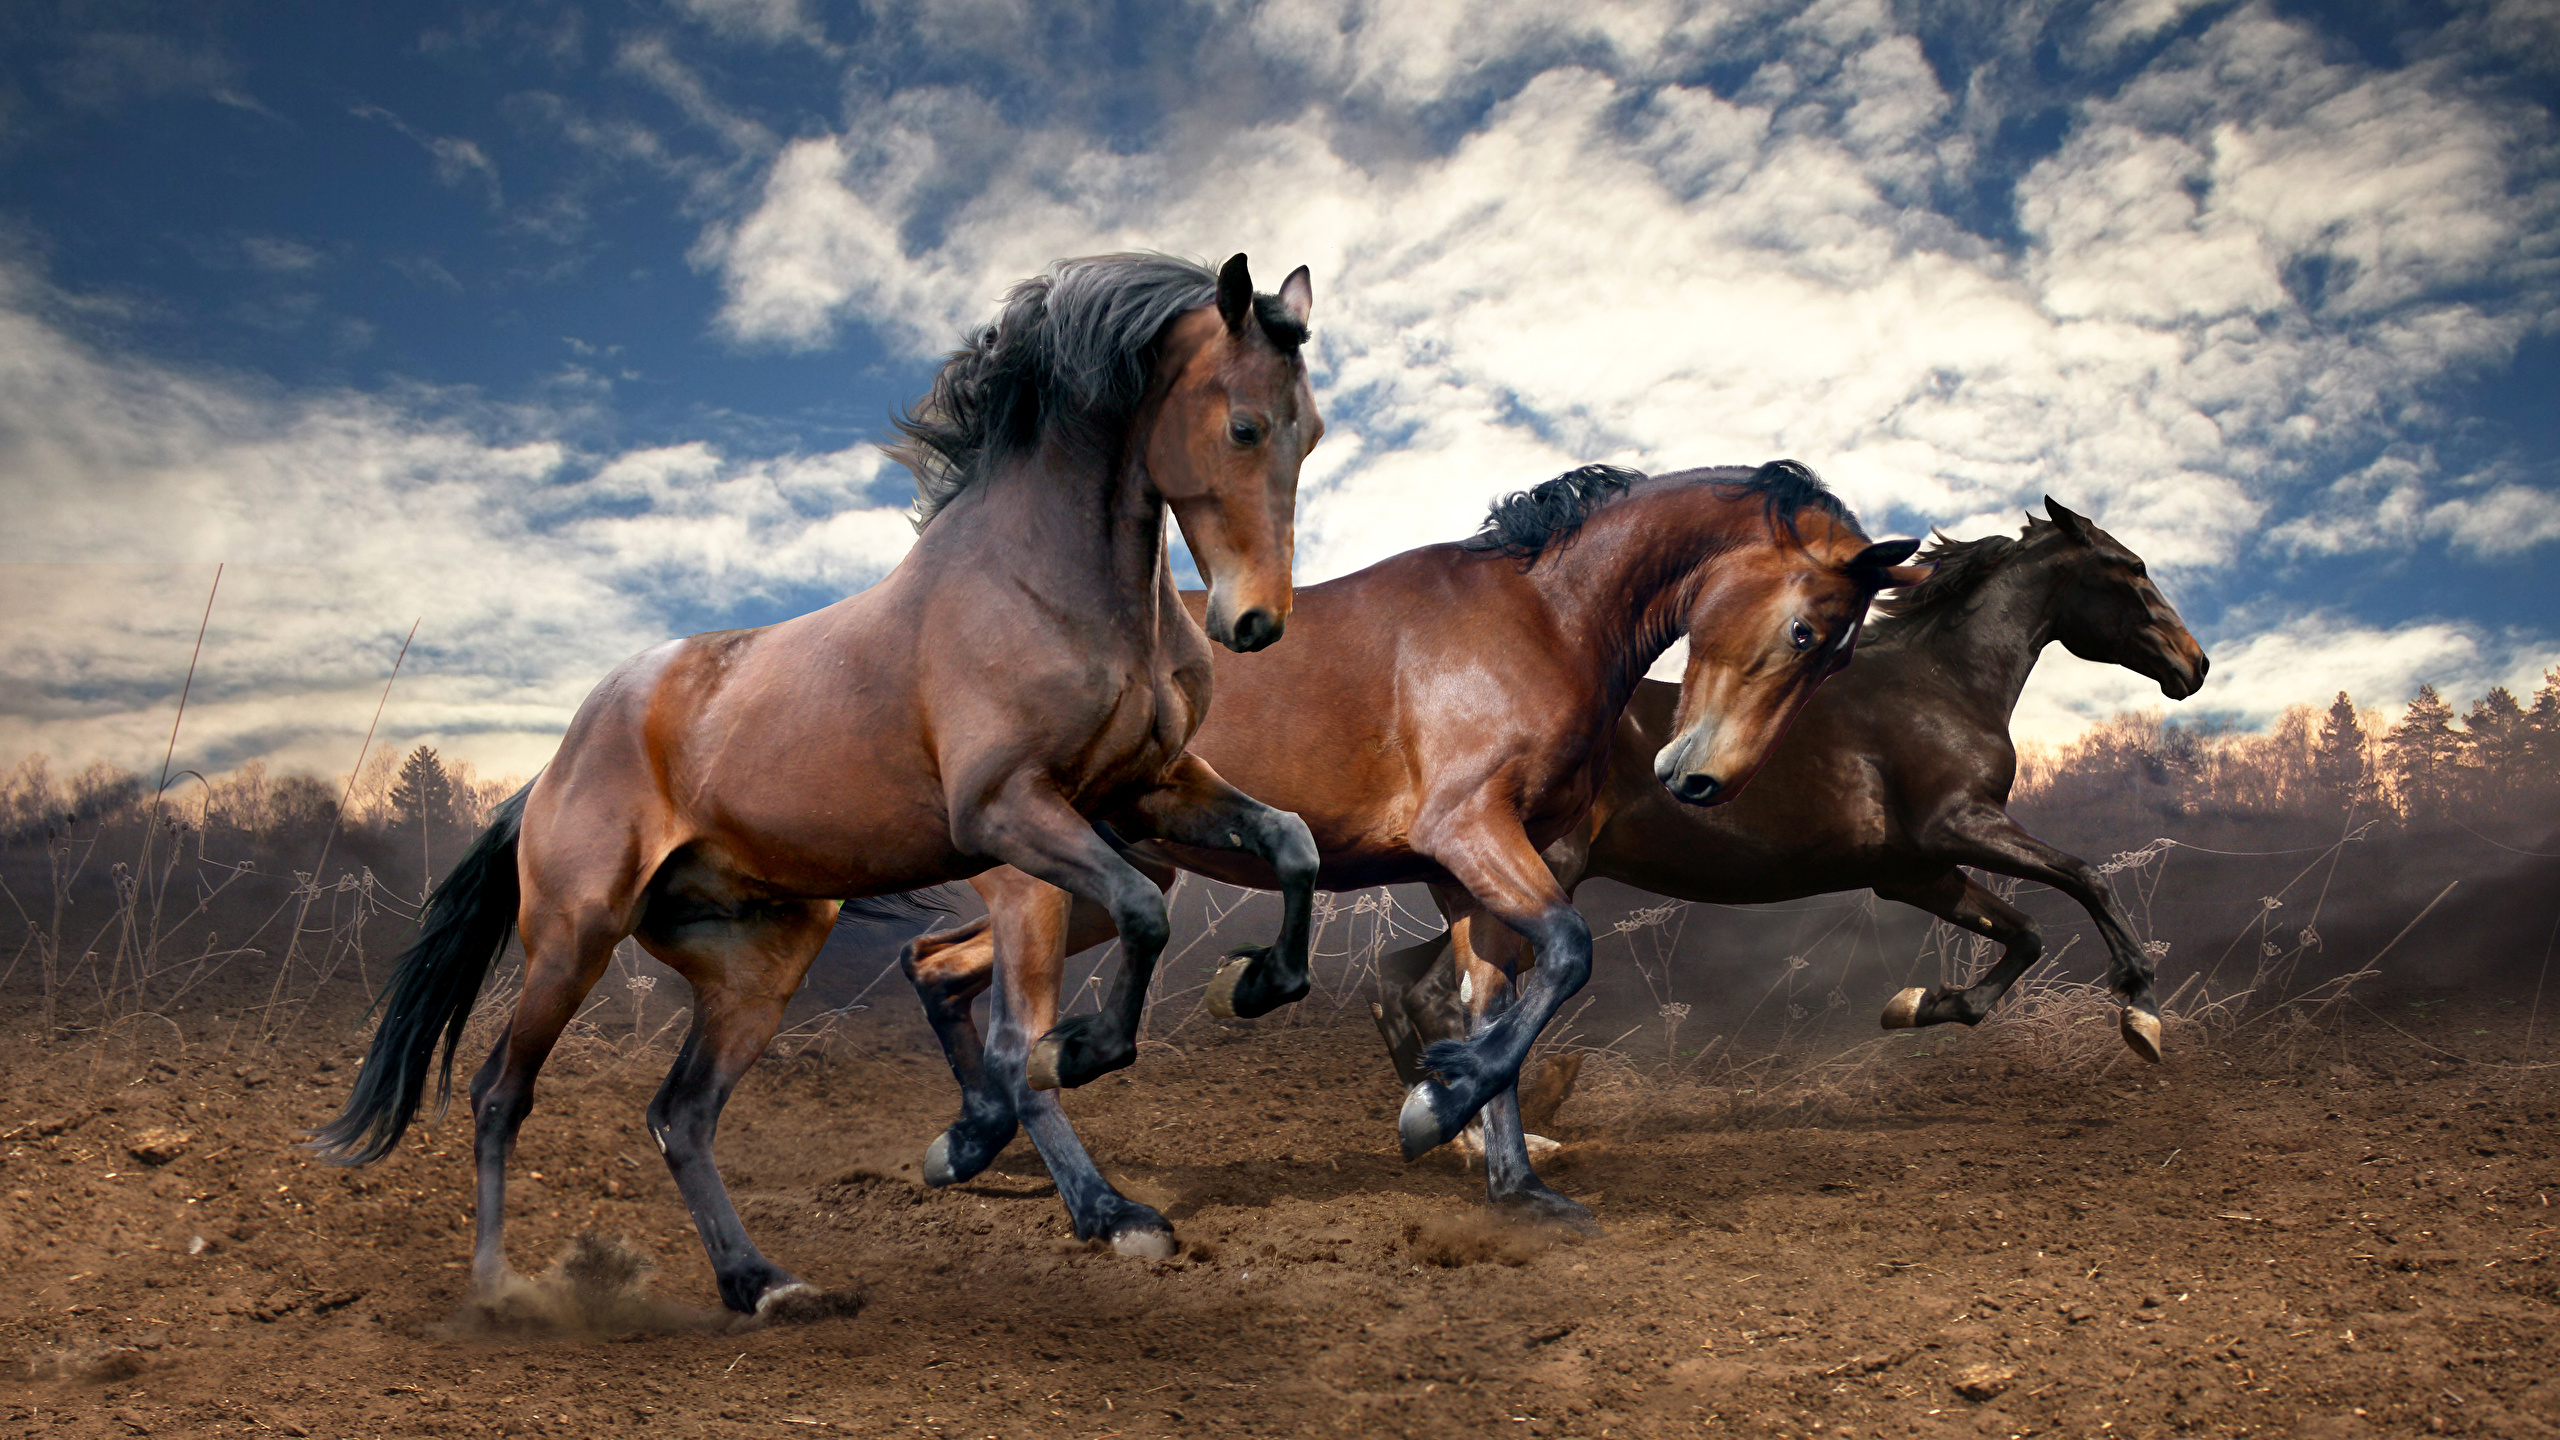 Horses_Three_3_Run_488731_2560x1440.jpg